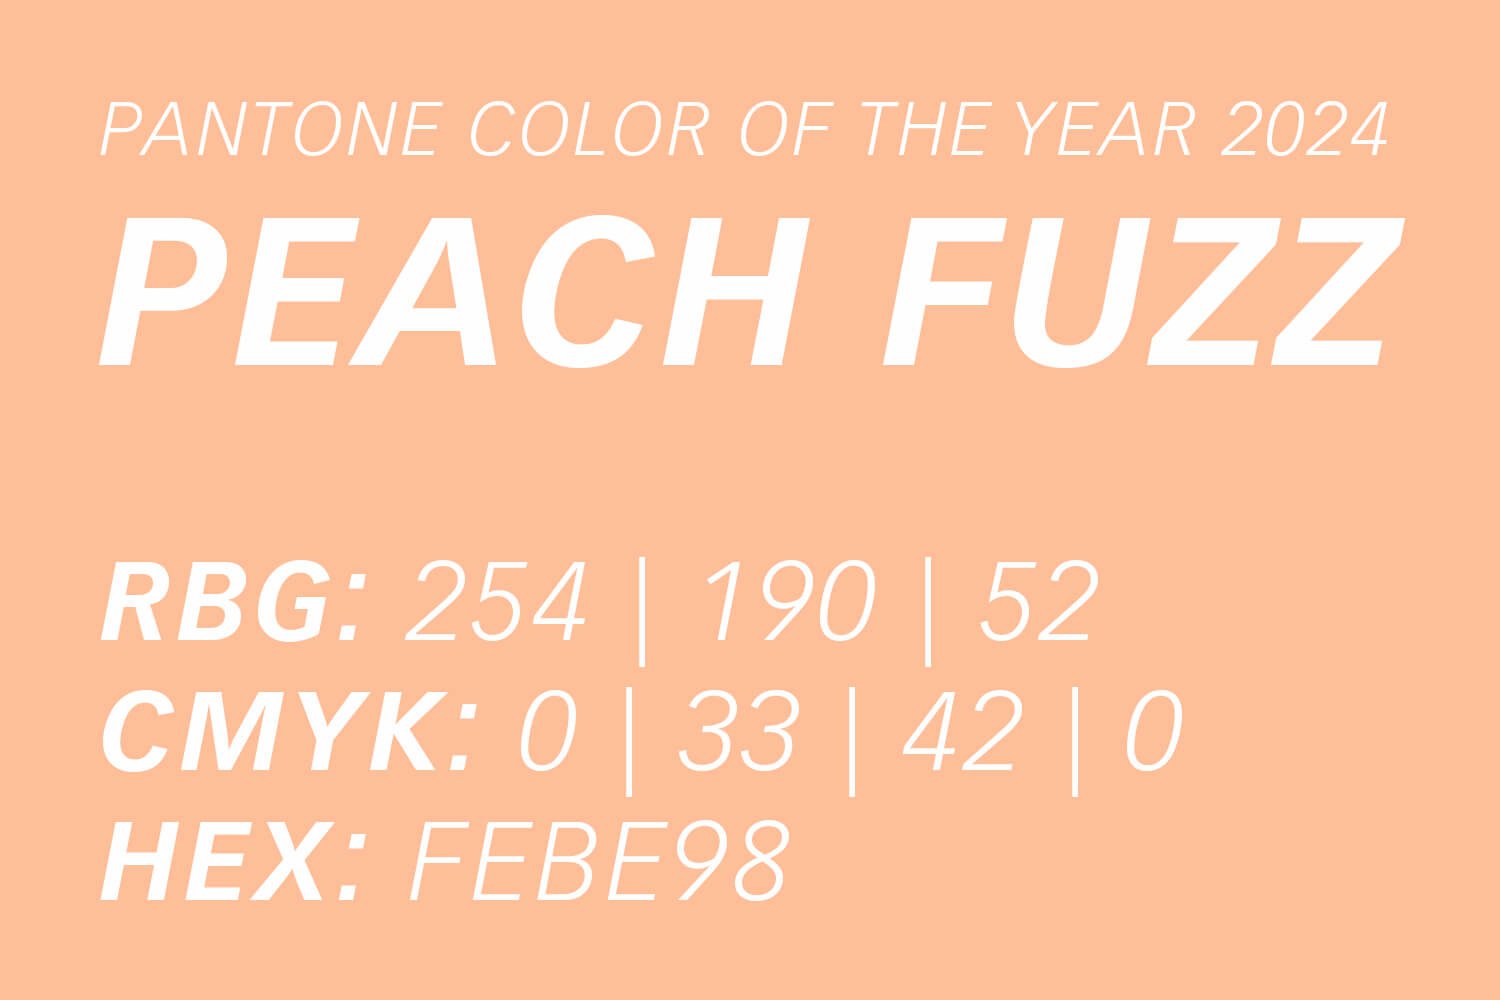 Pantone Farbe des Jahres 2024 Peach Fuzz umgewandelt als CMYK, RGB und HEX Werte